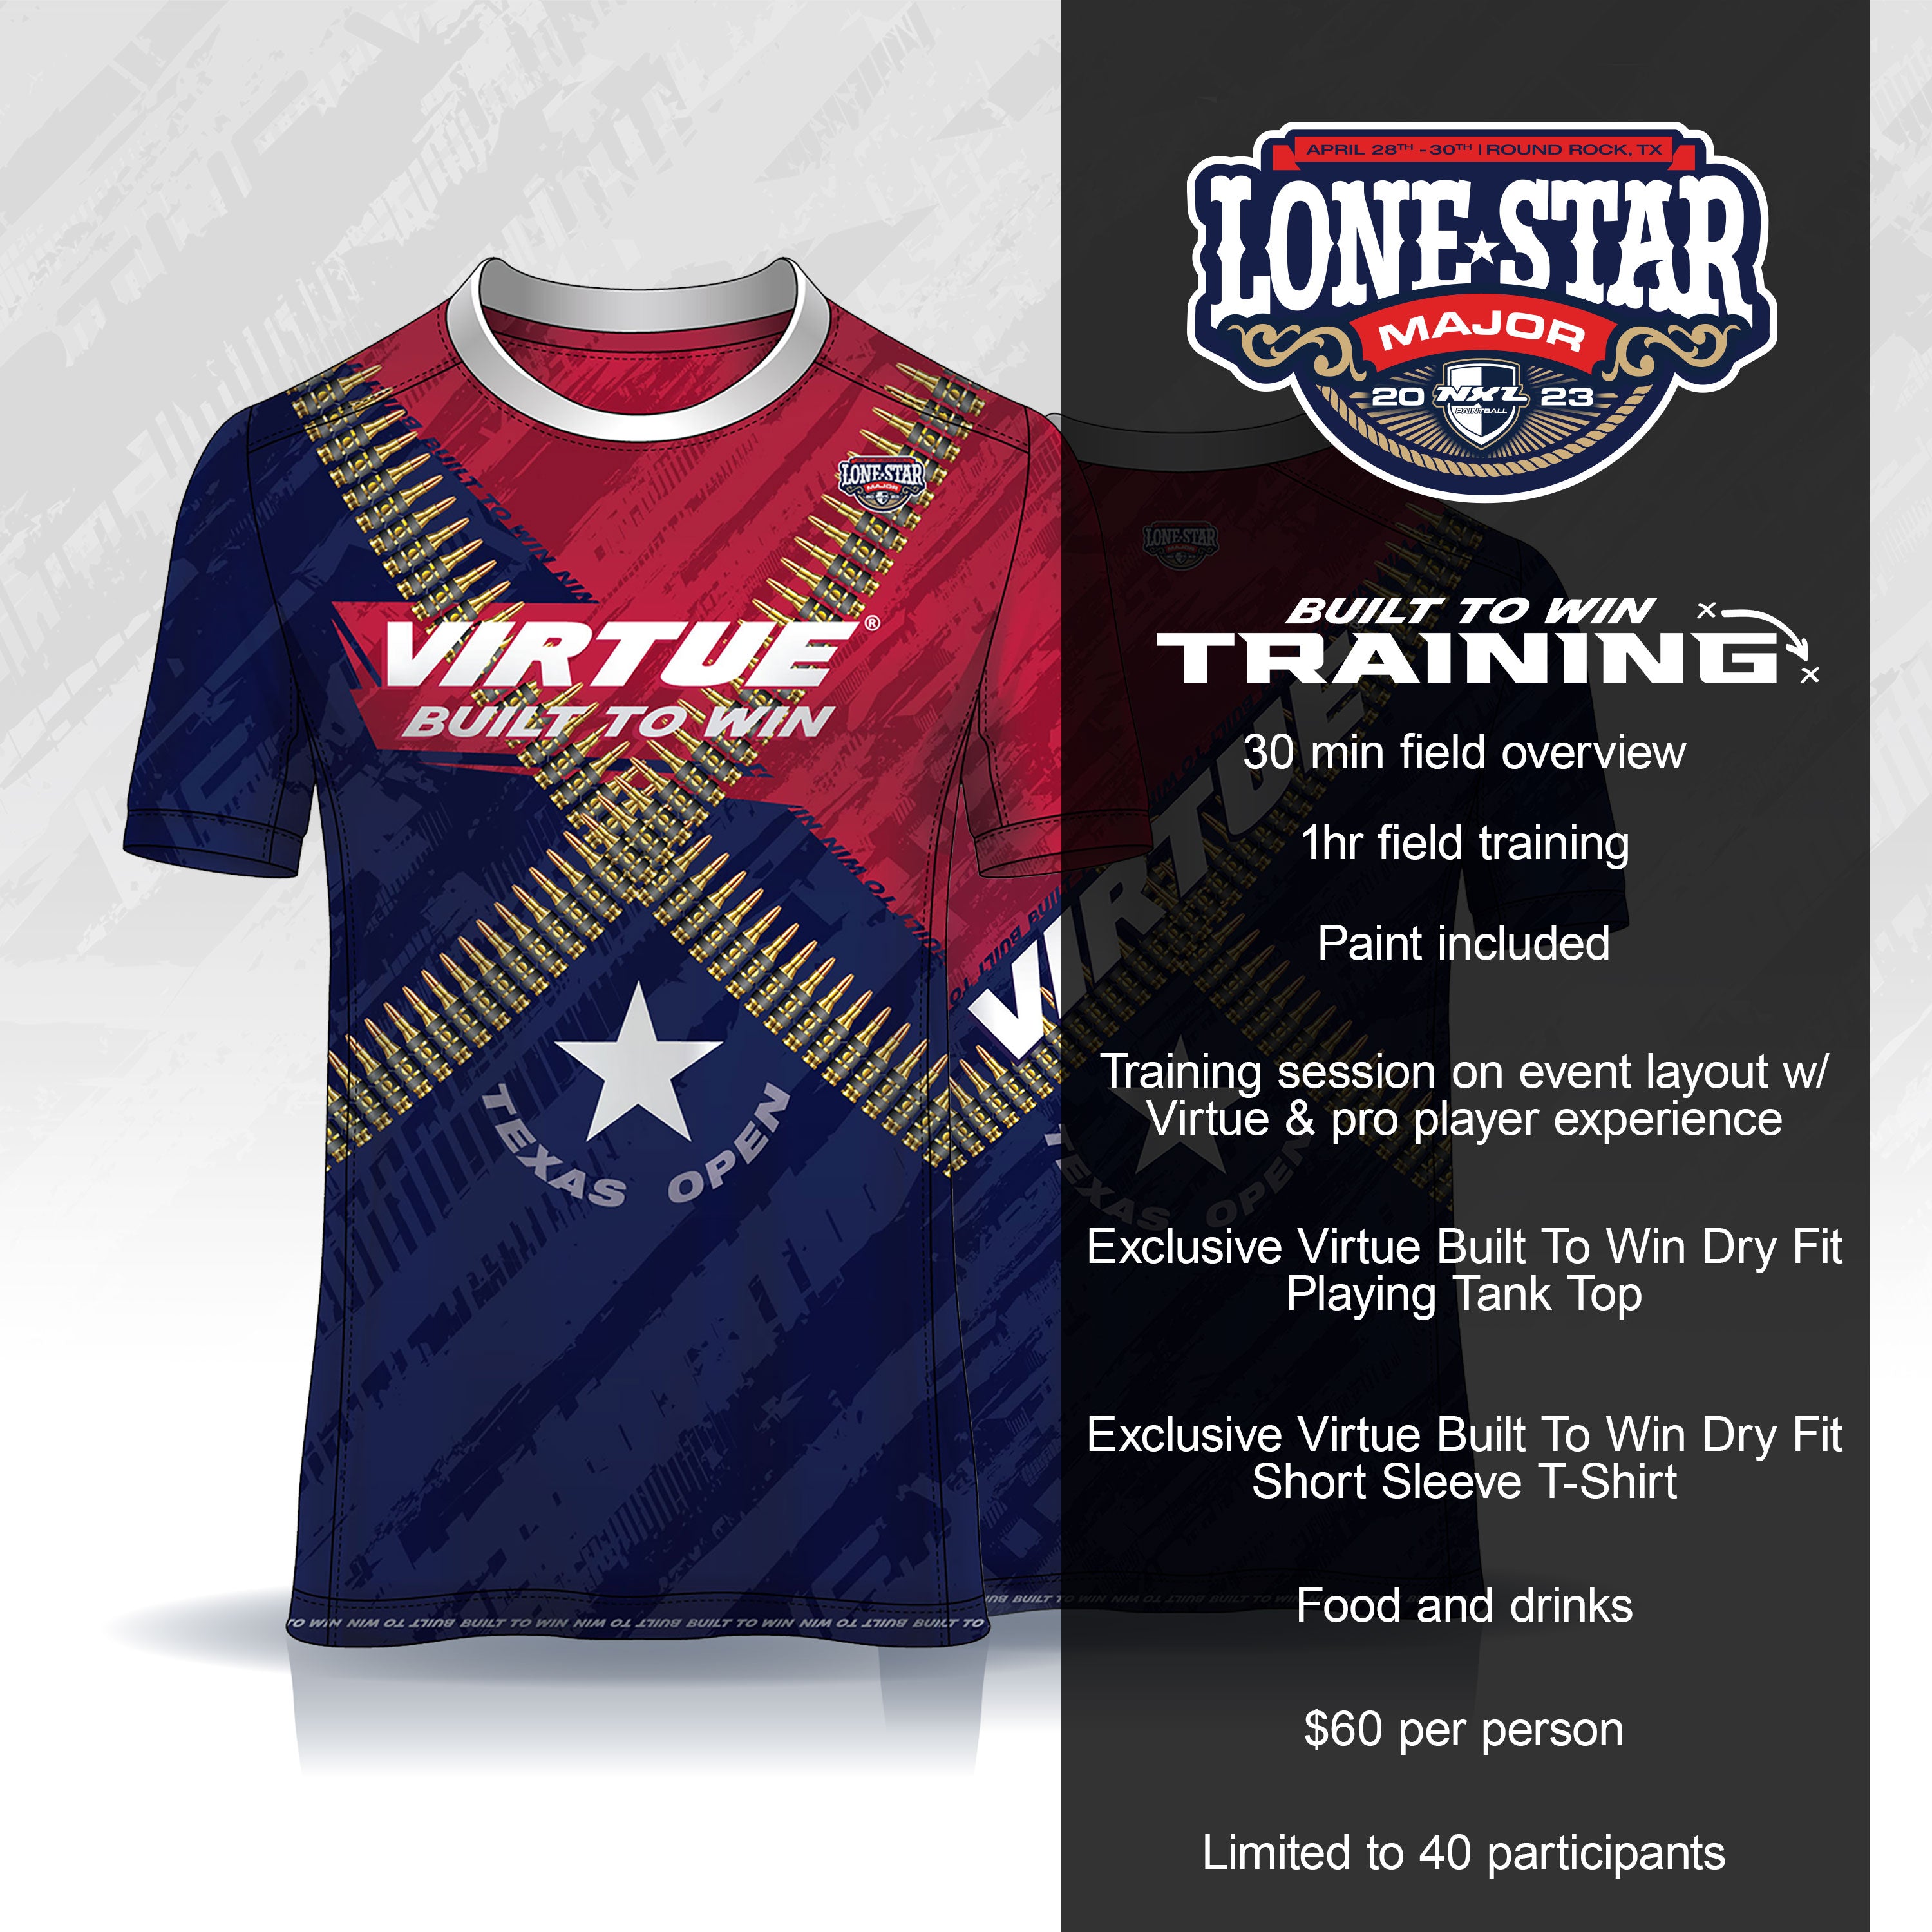 Built to Win Training - NXL Lonestar Texas Major